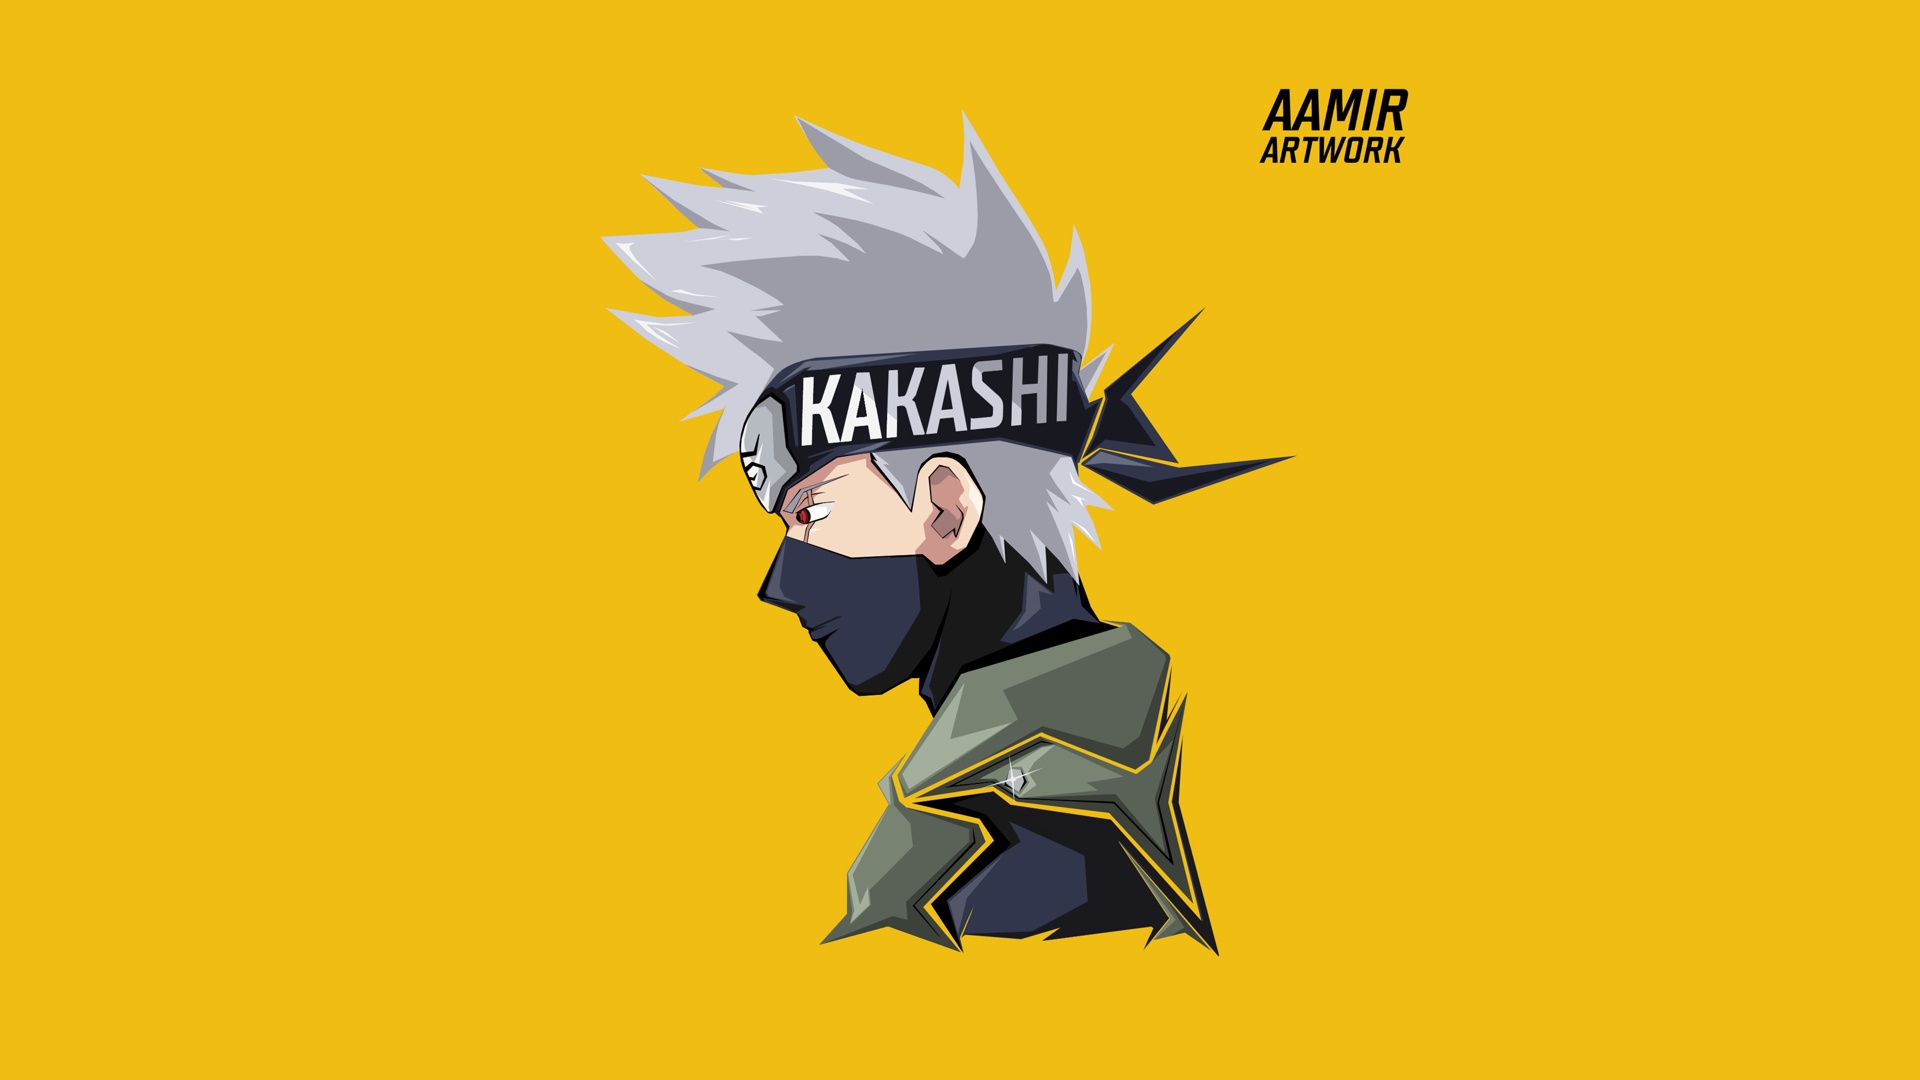 Kakashi: Xem hình ảnh của Kakashi - một trong những nhân vật được yêu thích nhất trong Naruto - và bạn sẽ bị cuốn hút vào vẻ ngoài bí ẩn của anh ta. Cùng khám phá thế giới của Kakashi qua một loạt hình ảnh đầy màu sắc và đầy cảm hứng.